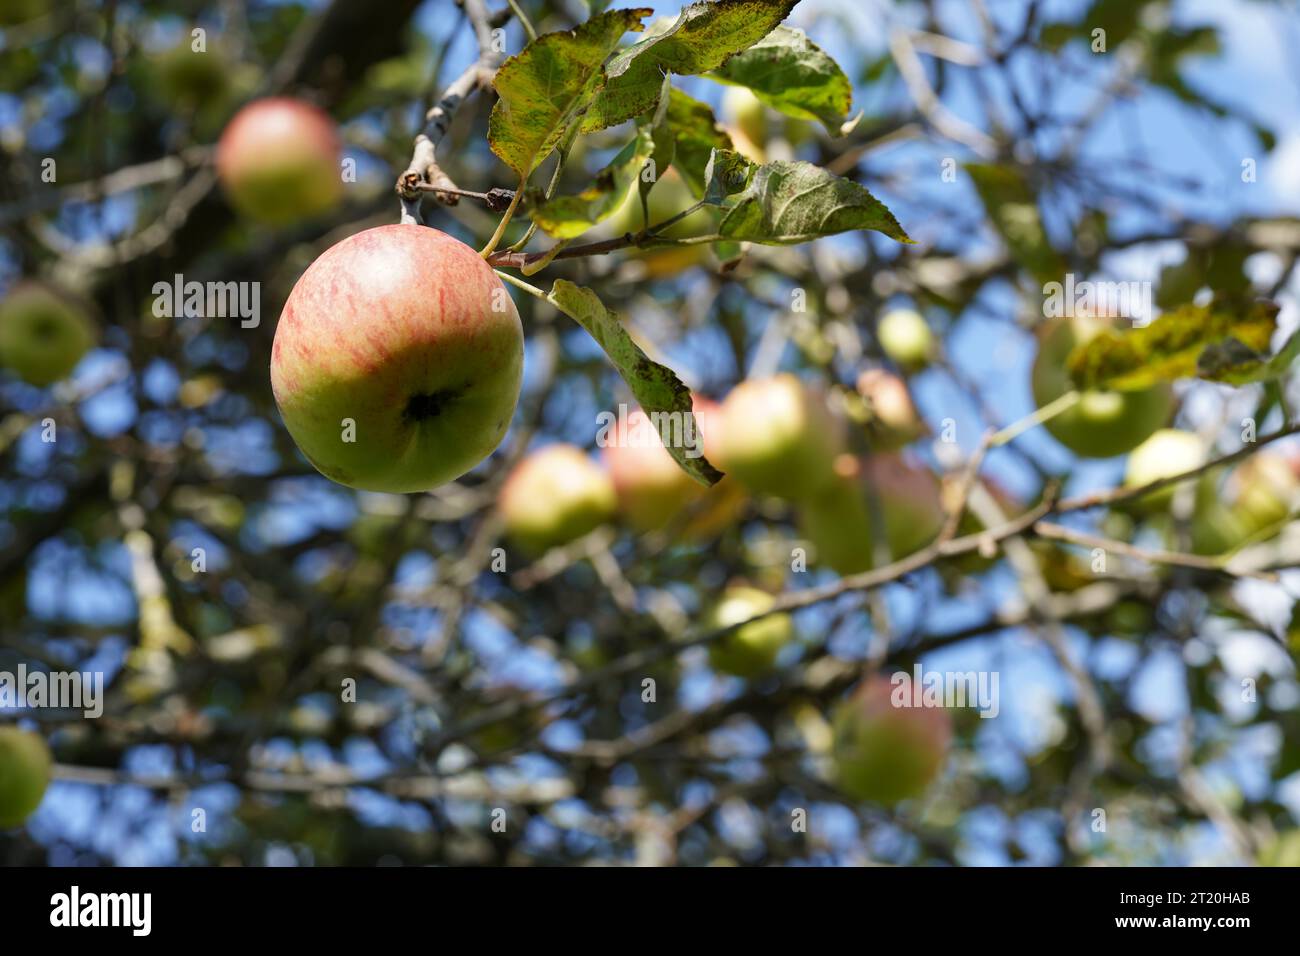 Apfel hängt an einem Apfelbaum. Auf dem Hintergrund befinden sich unscharfe Äste, Blätter und Apfelfrüchte. Stockfoto